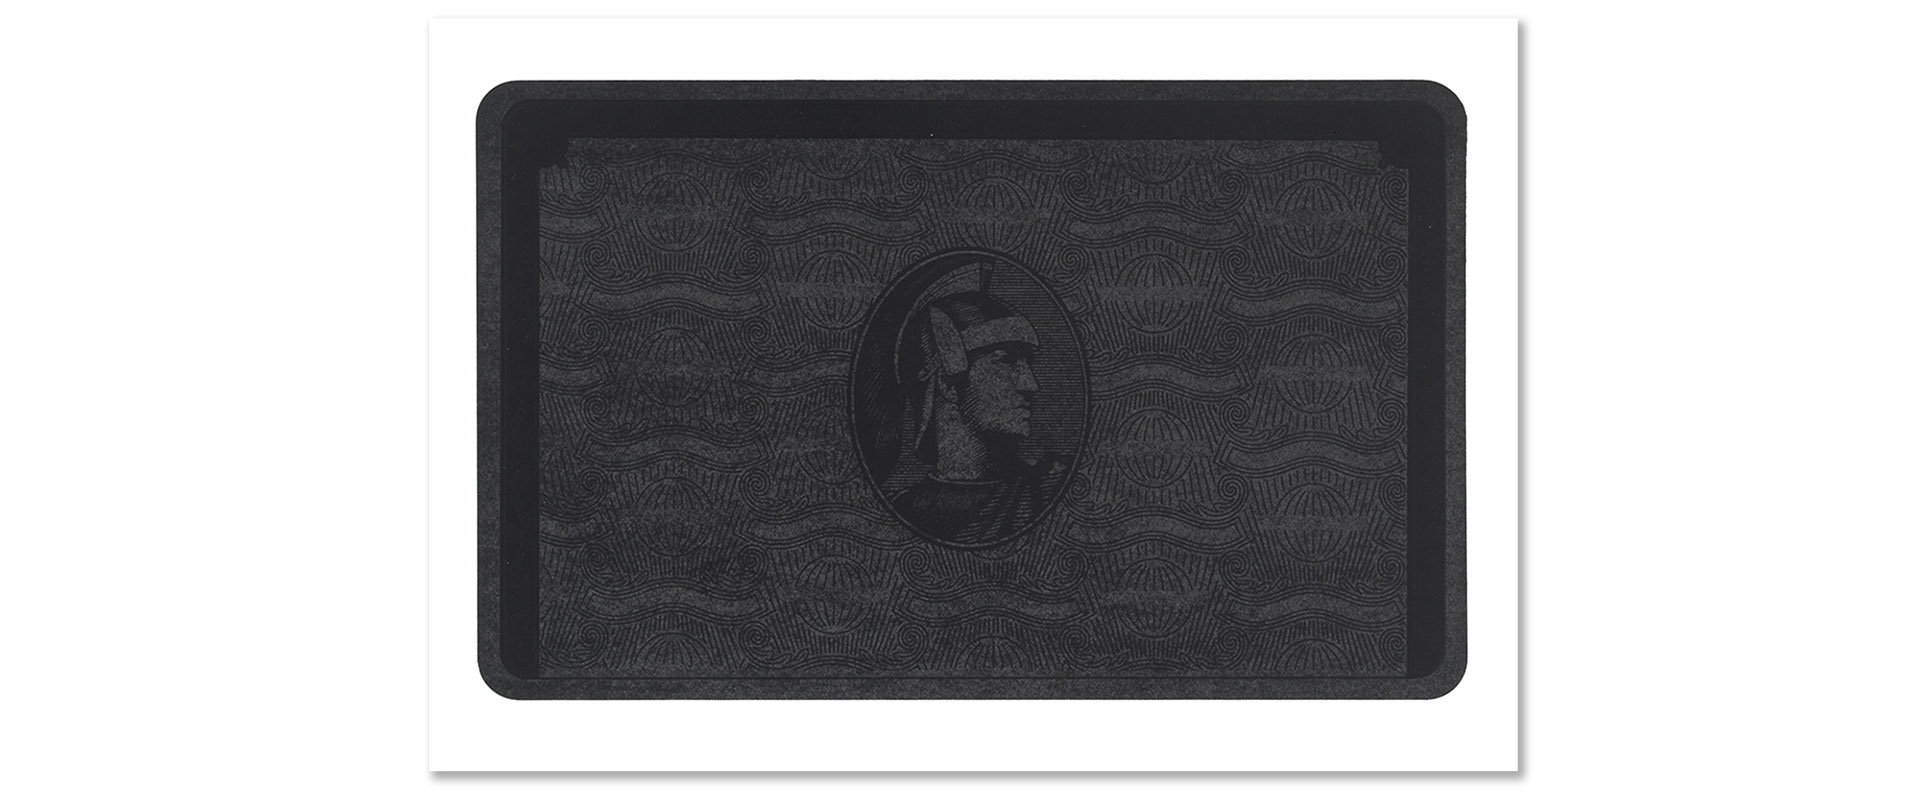 AMEX - 2017, Schichtsiebdruck auf Papier, 50 x 70 cm